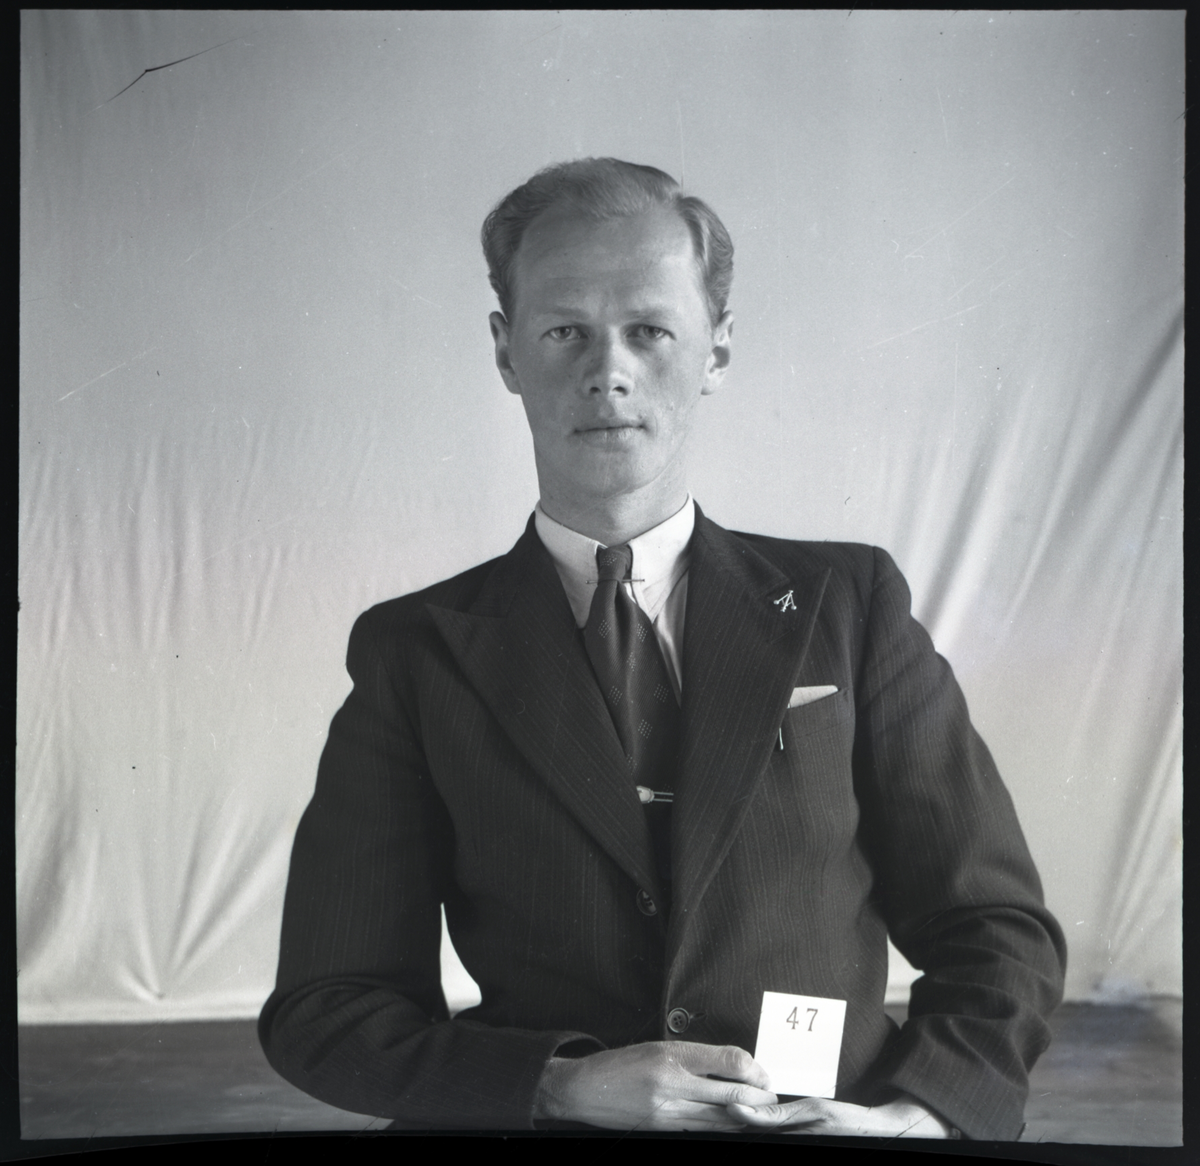 Klassefoto av elev Fredrik Johnsen som gikk på Skiensfjordens tekniske fagskole i Porsgrunn. Han er identifisert basert på skolefoto TGM-B.31977.L7.059

Negativ ble opprinnelig oppbevart i en eske med påskrift: Porsgrunns Tekniker 1942-43.